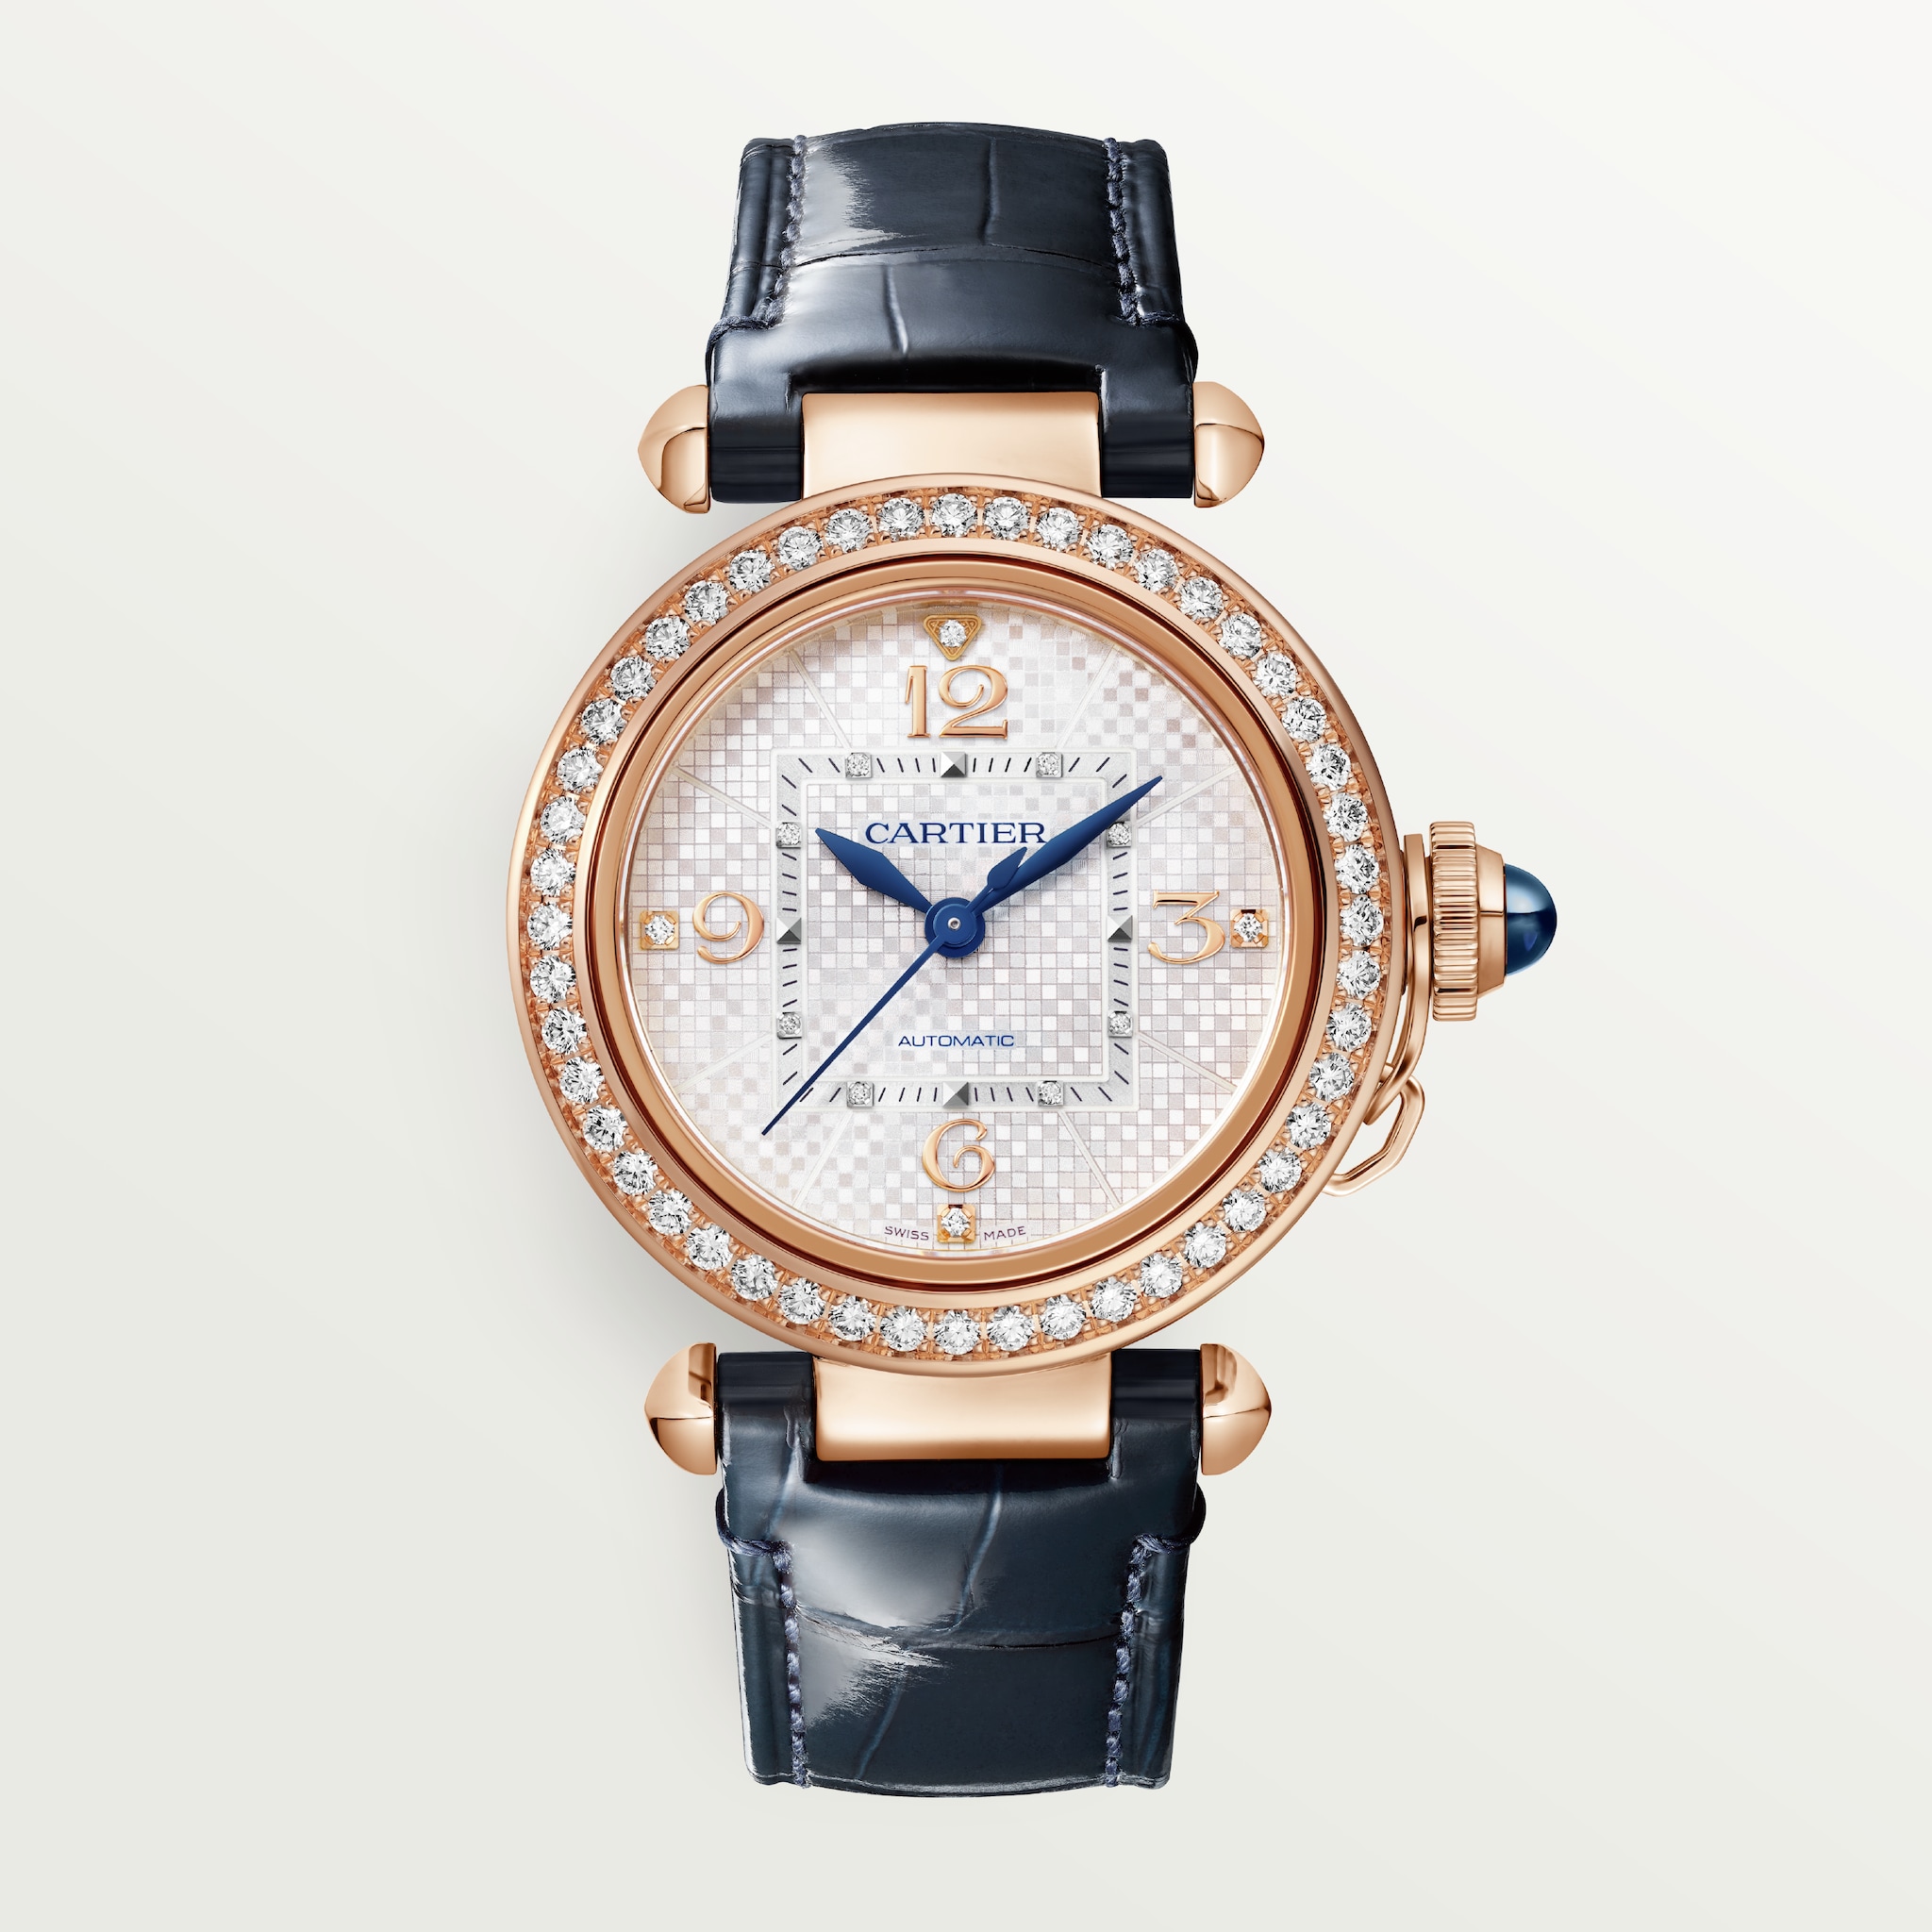 Reloj Pasha de Cartier35 mm, movimiento automático, oro rosa, correas de piel intercambiables